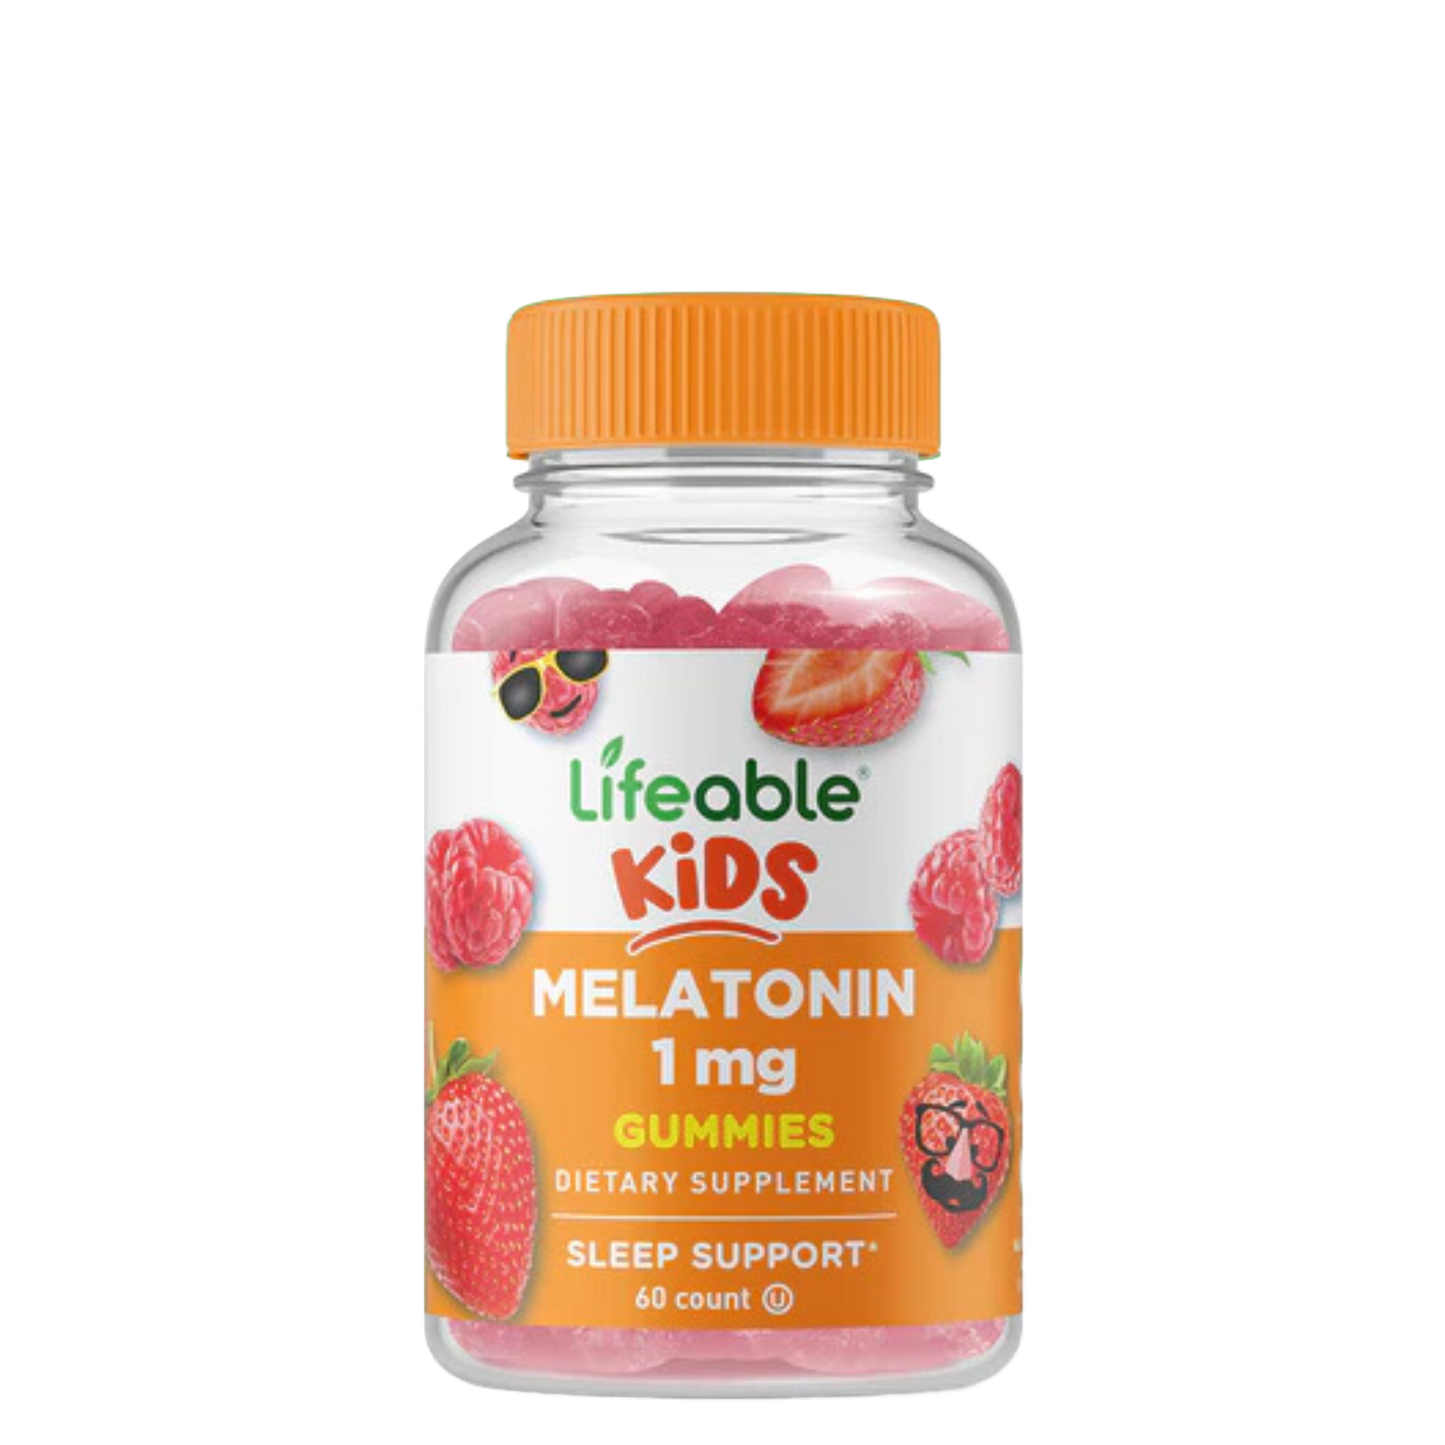 Melatonin 1 mg Gummies for Kids